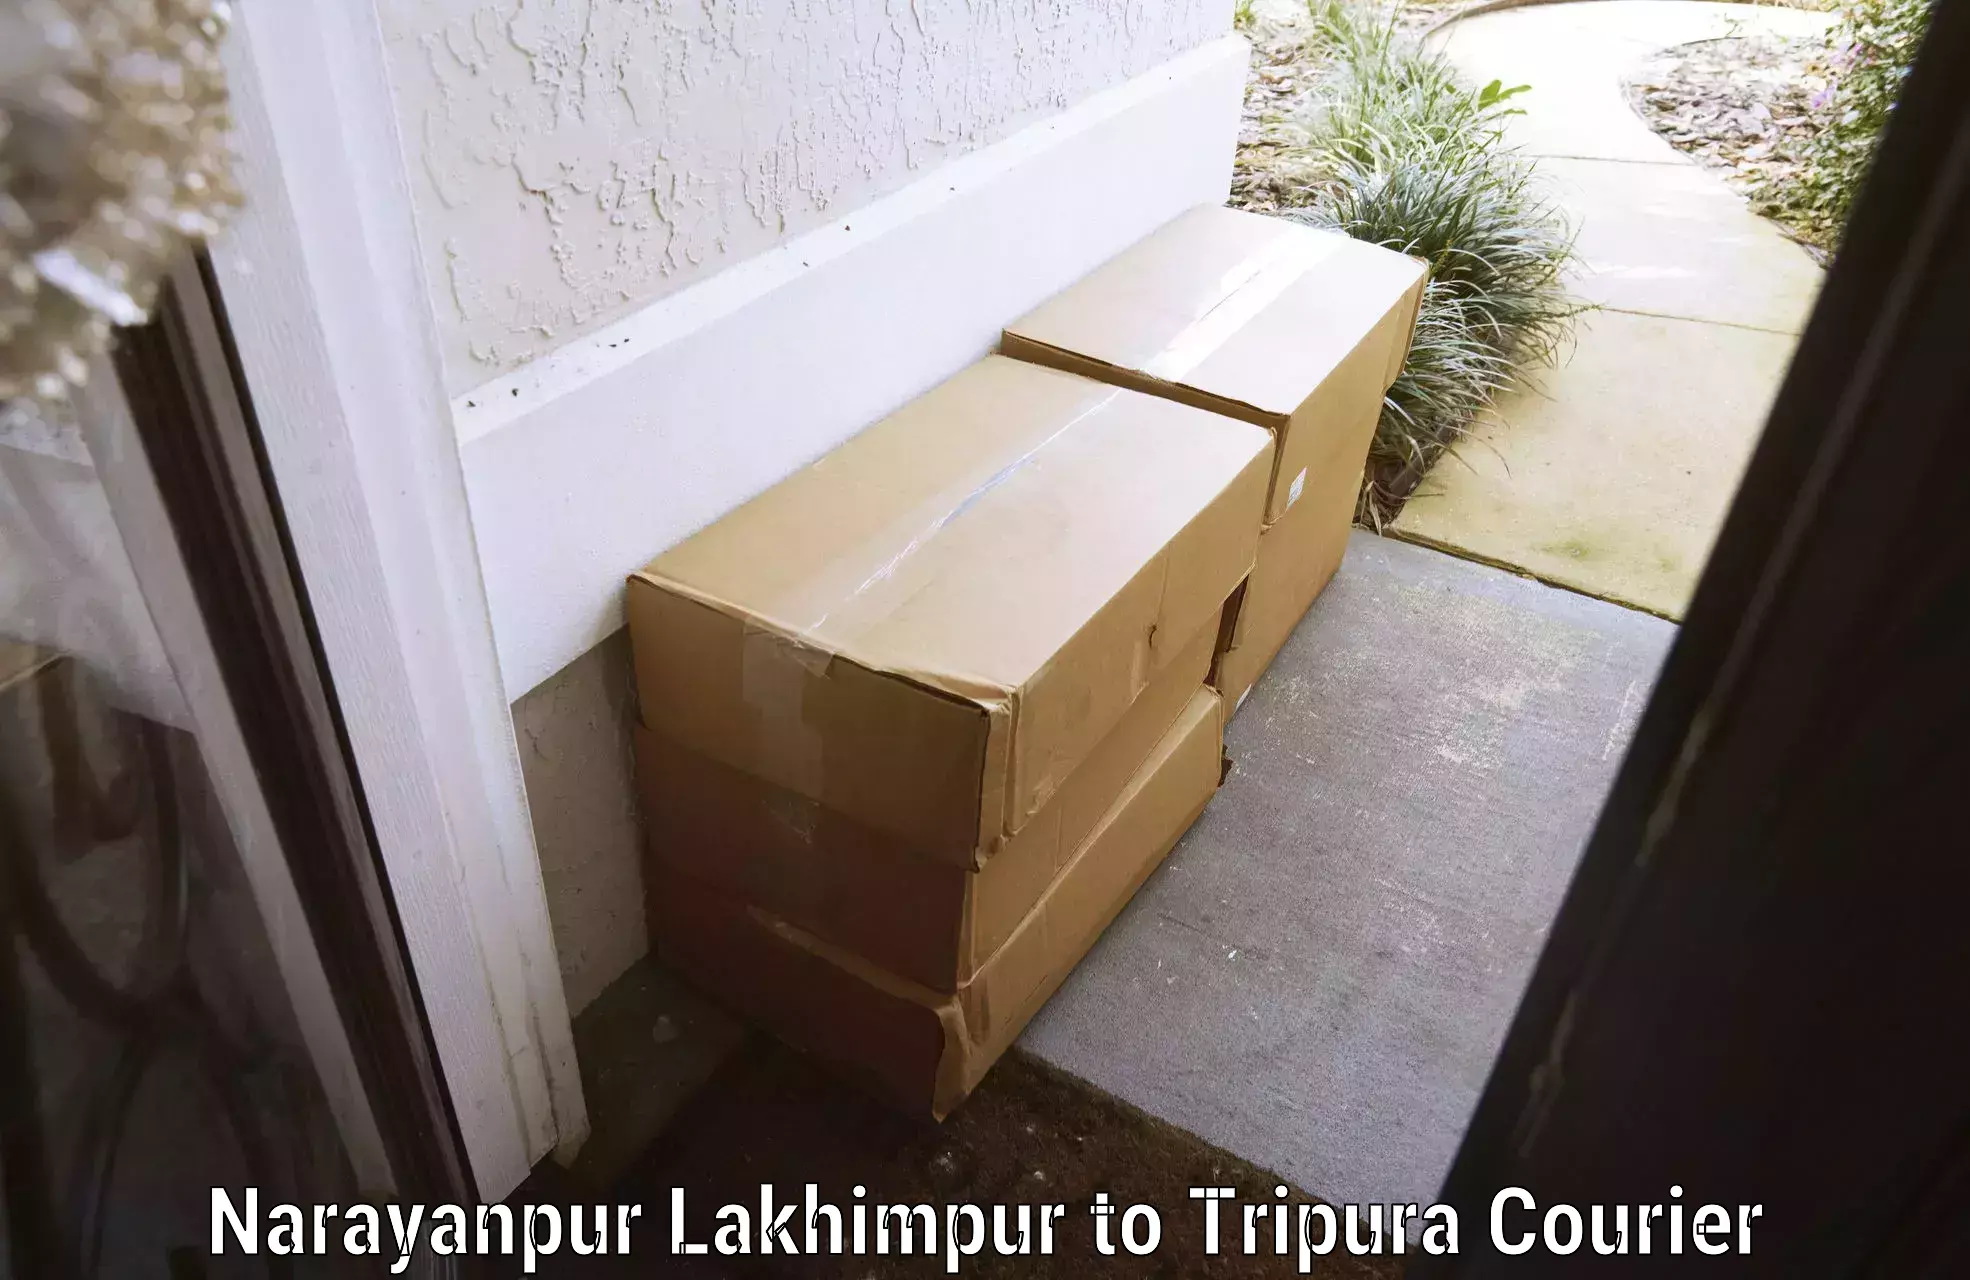 Urgent luggage shipment Narayanpur Lakhimpur to Bishalgarh